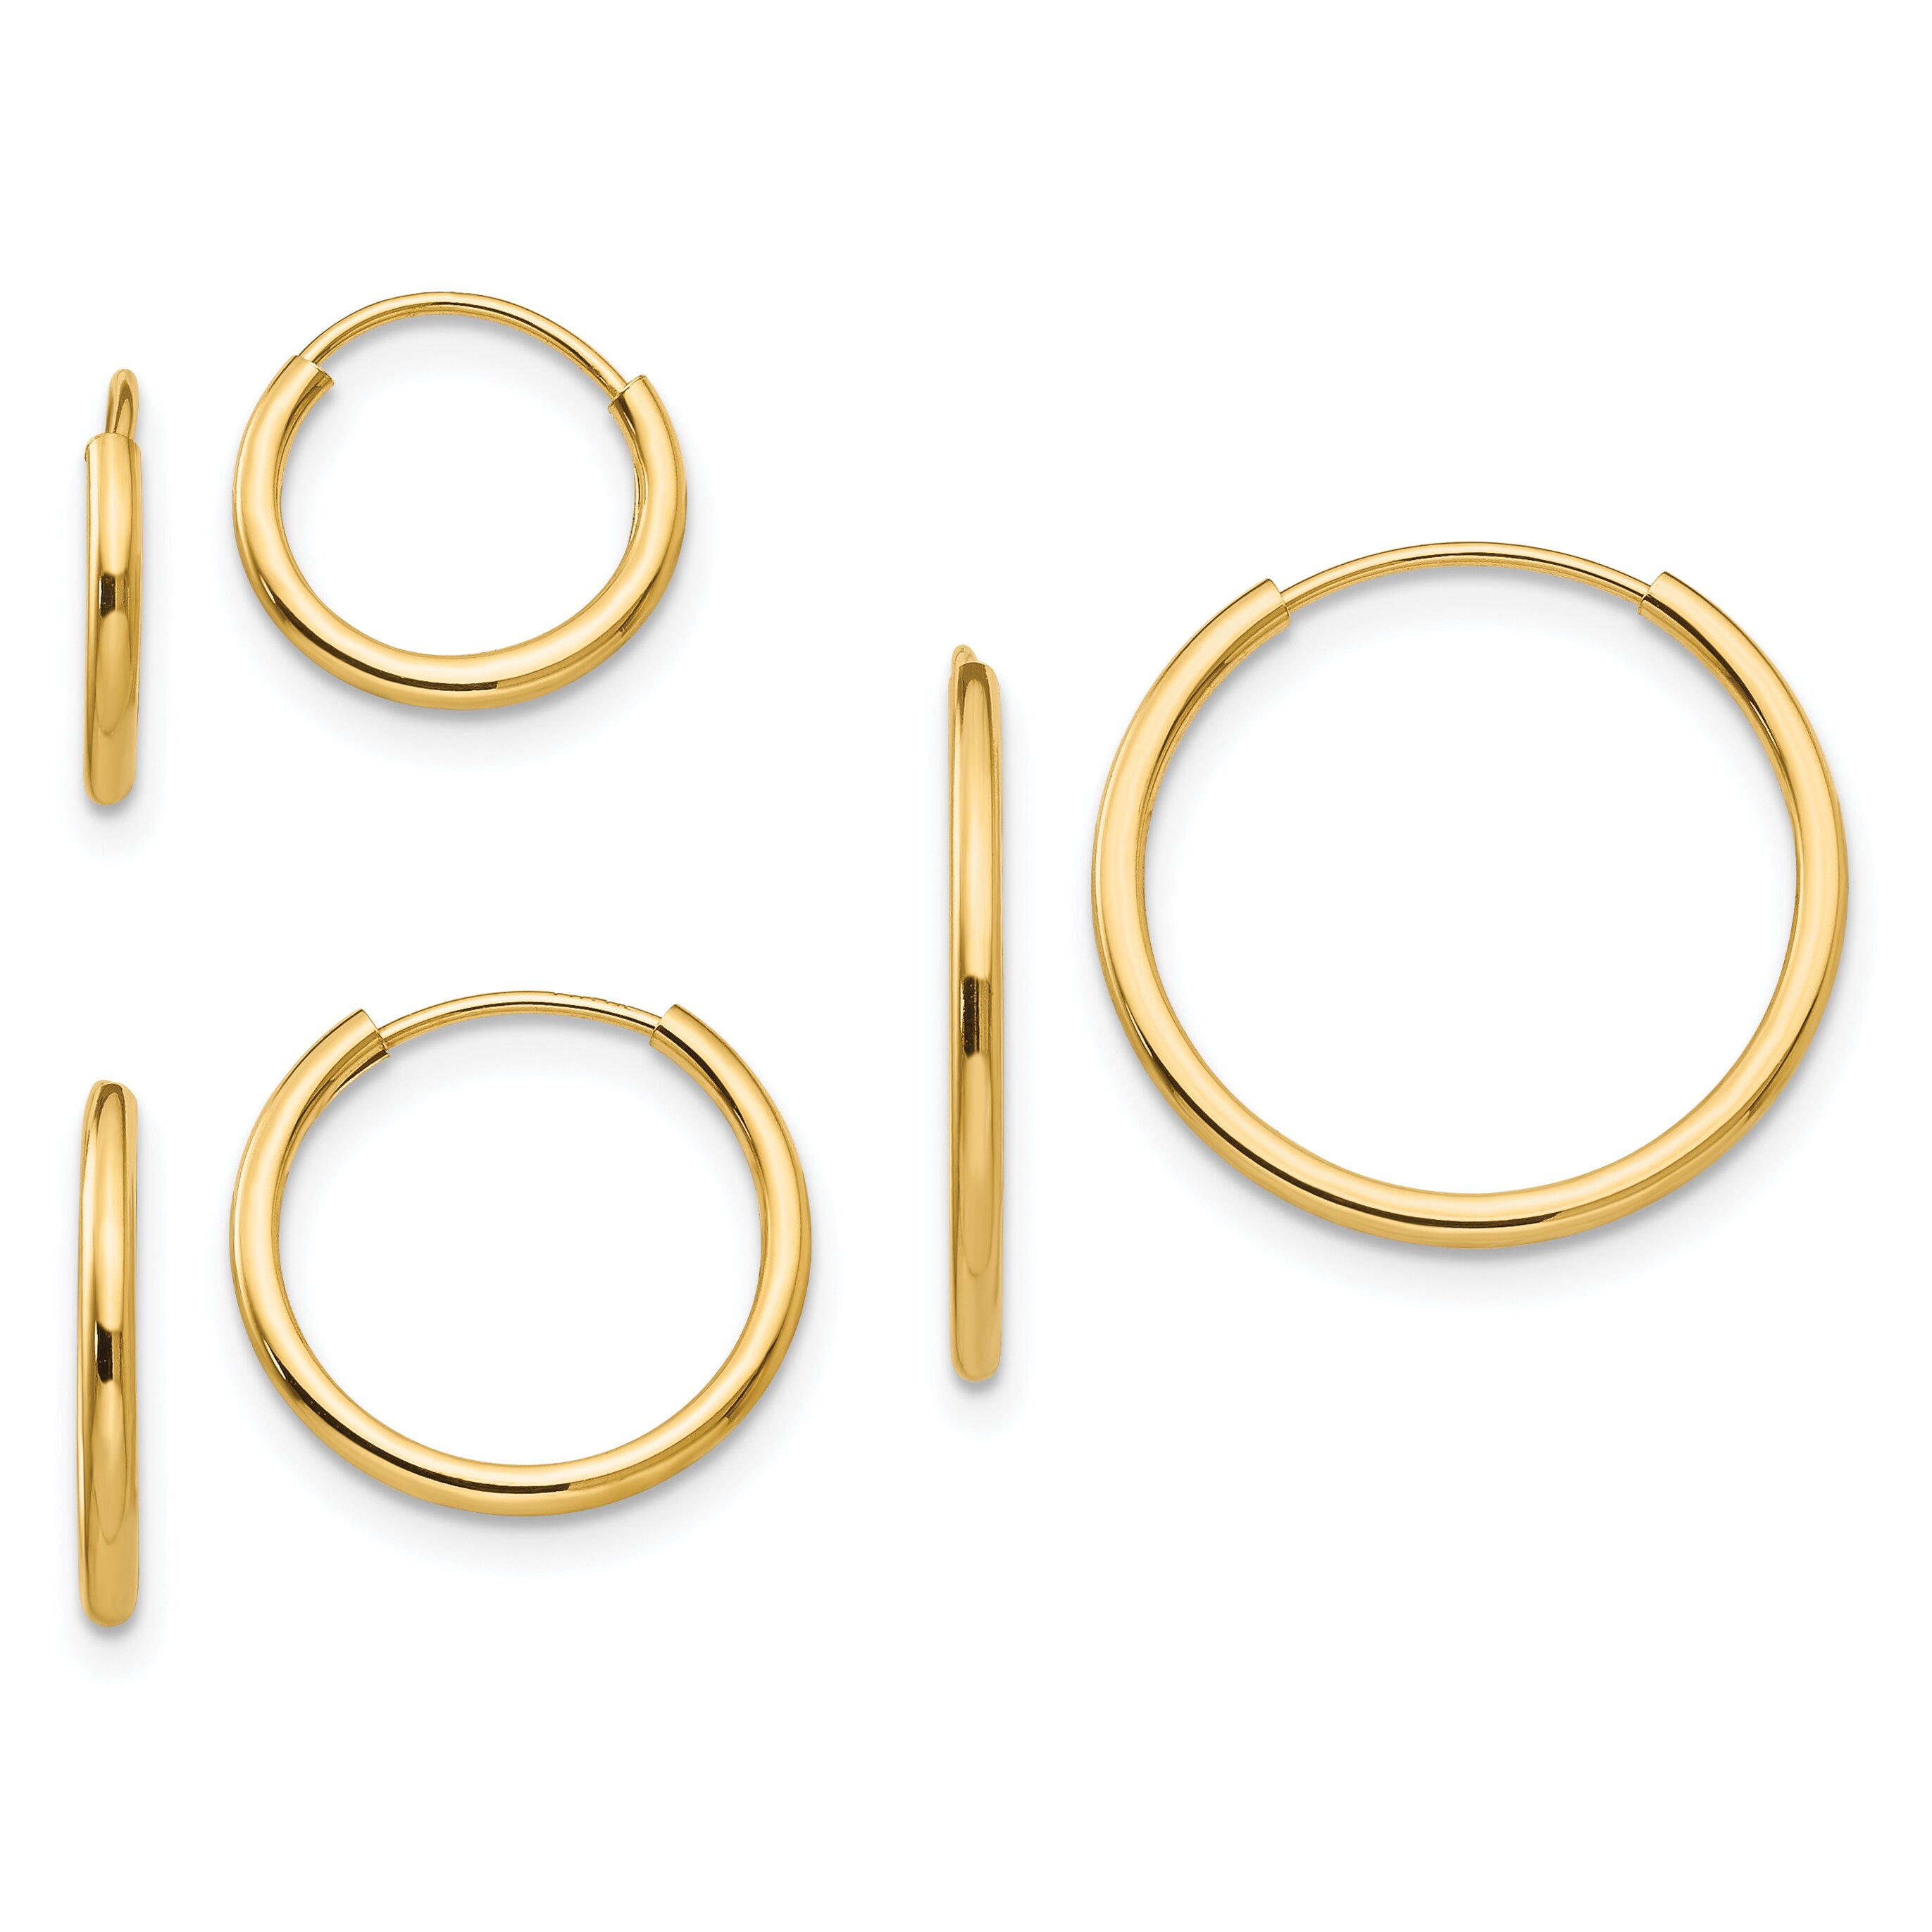 Findingking 14K Gold 3 Pair Set Endless Hoop Earrings Jewelry